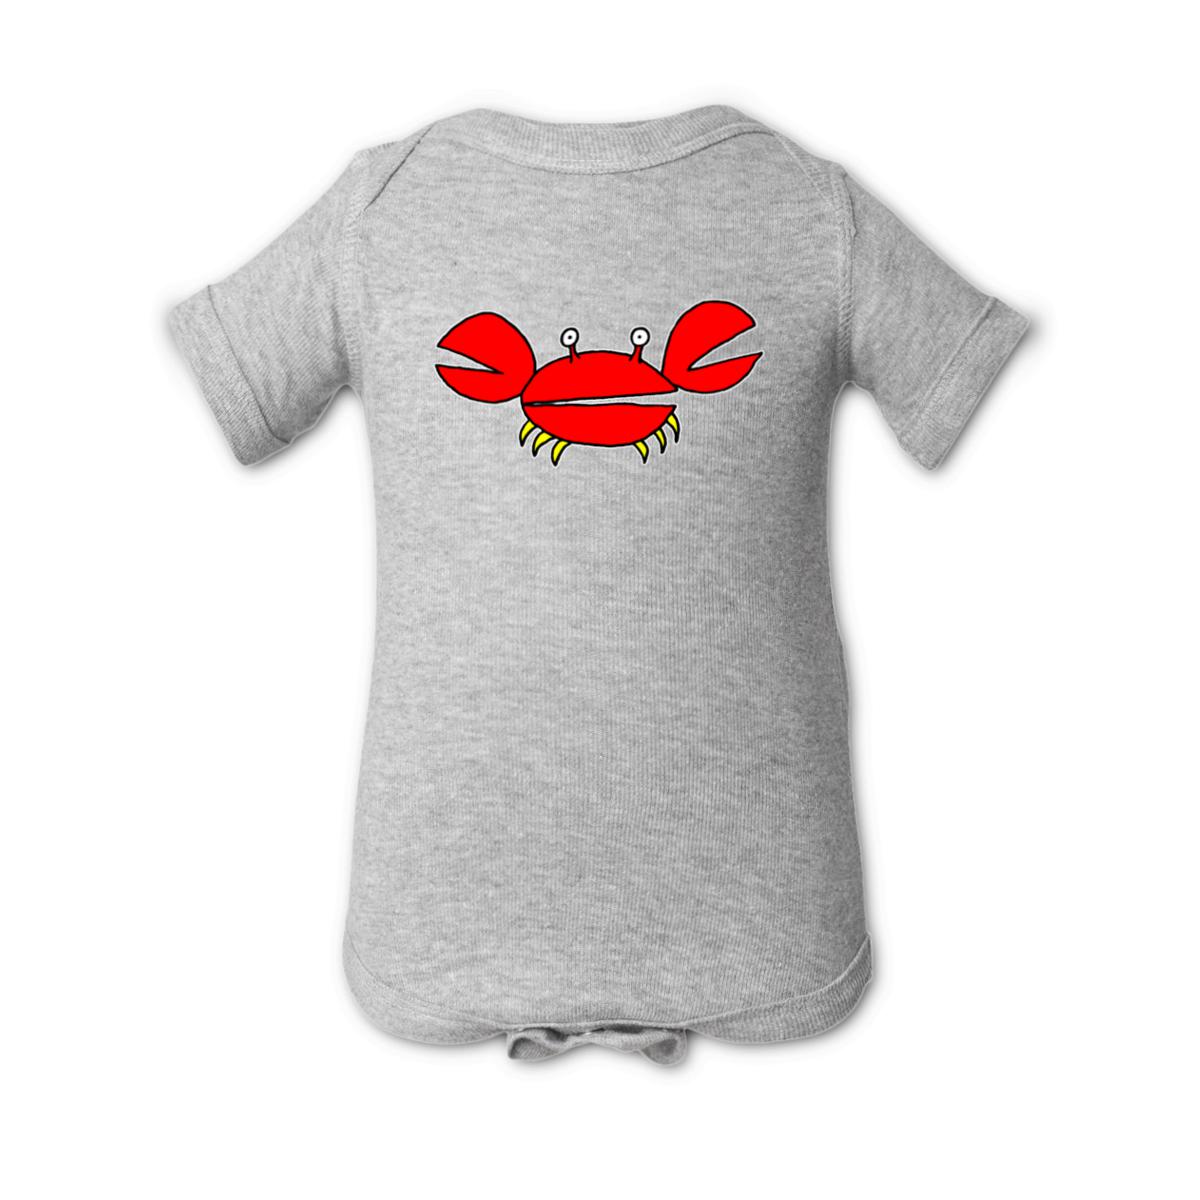 Crab Onesie 18M heather